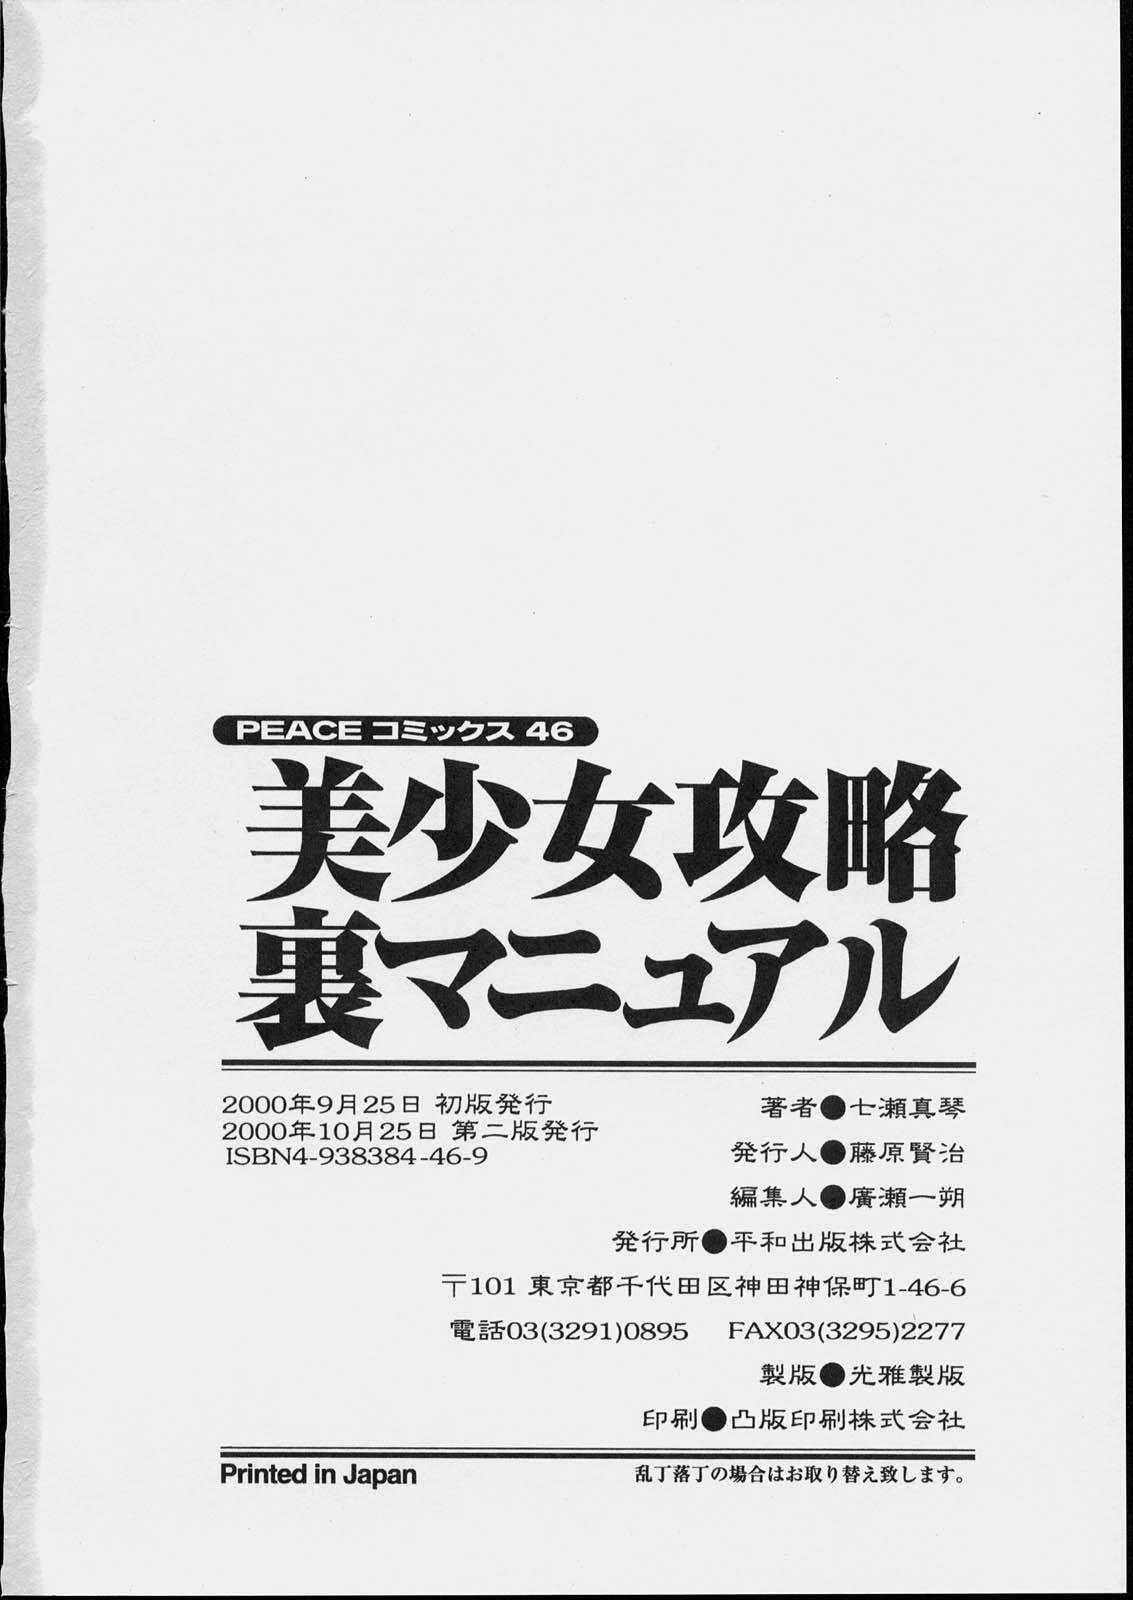 Bishoujo Kouryaku Ura Manual - Black Manual Of Capture The Beautiful Girls 167